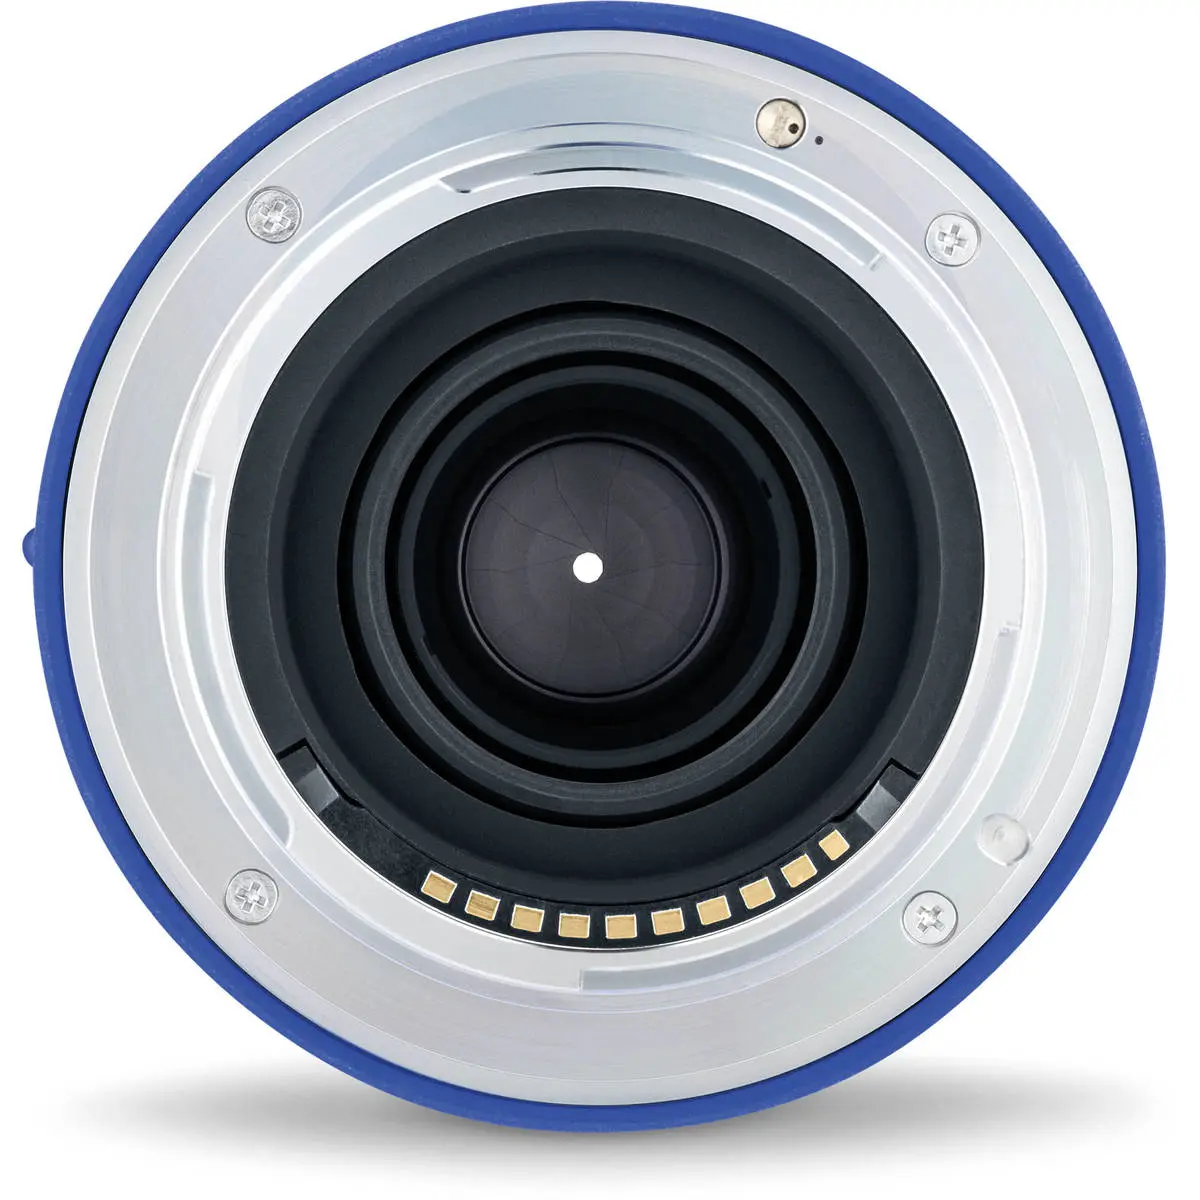 12. Carl Zeiss Loxia 2.4/25 (Sony FE) Lens